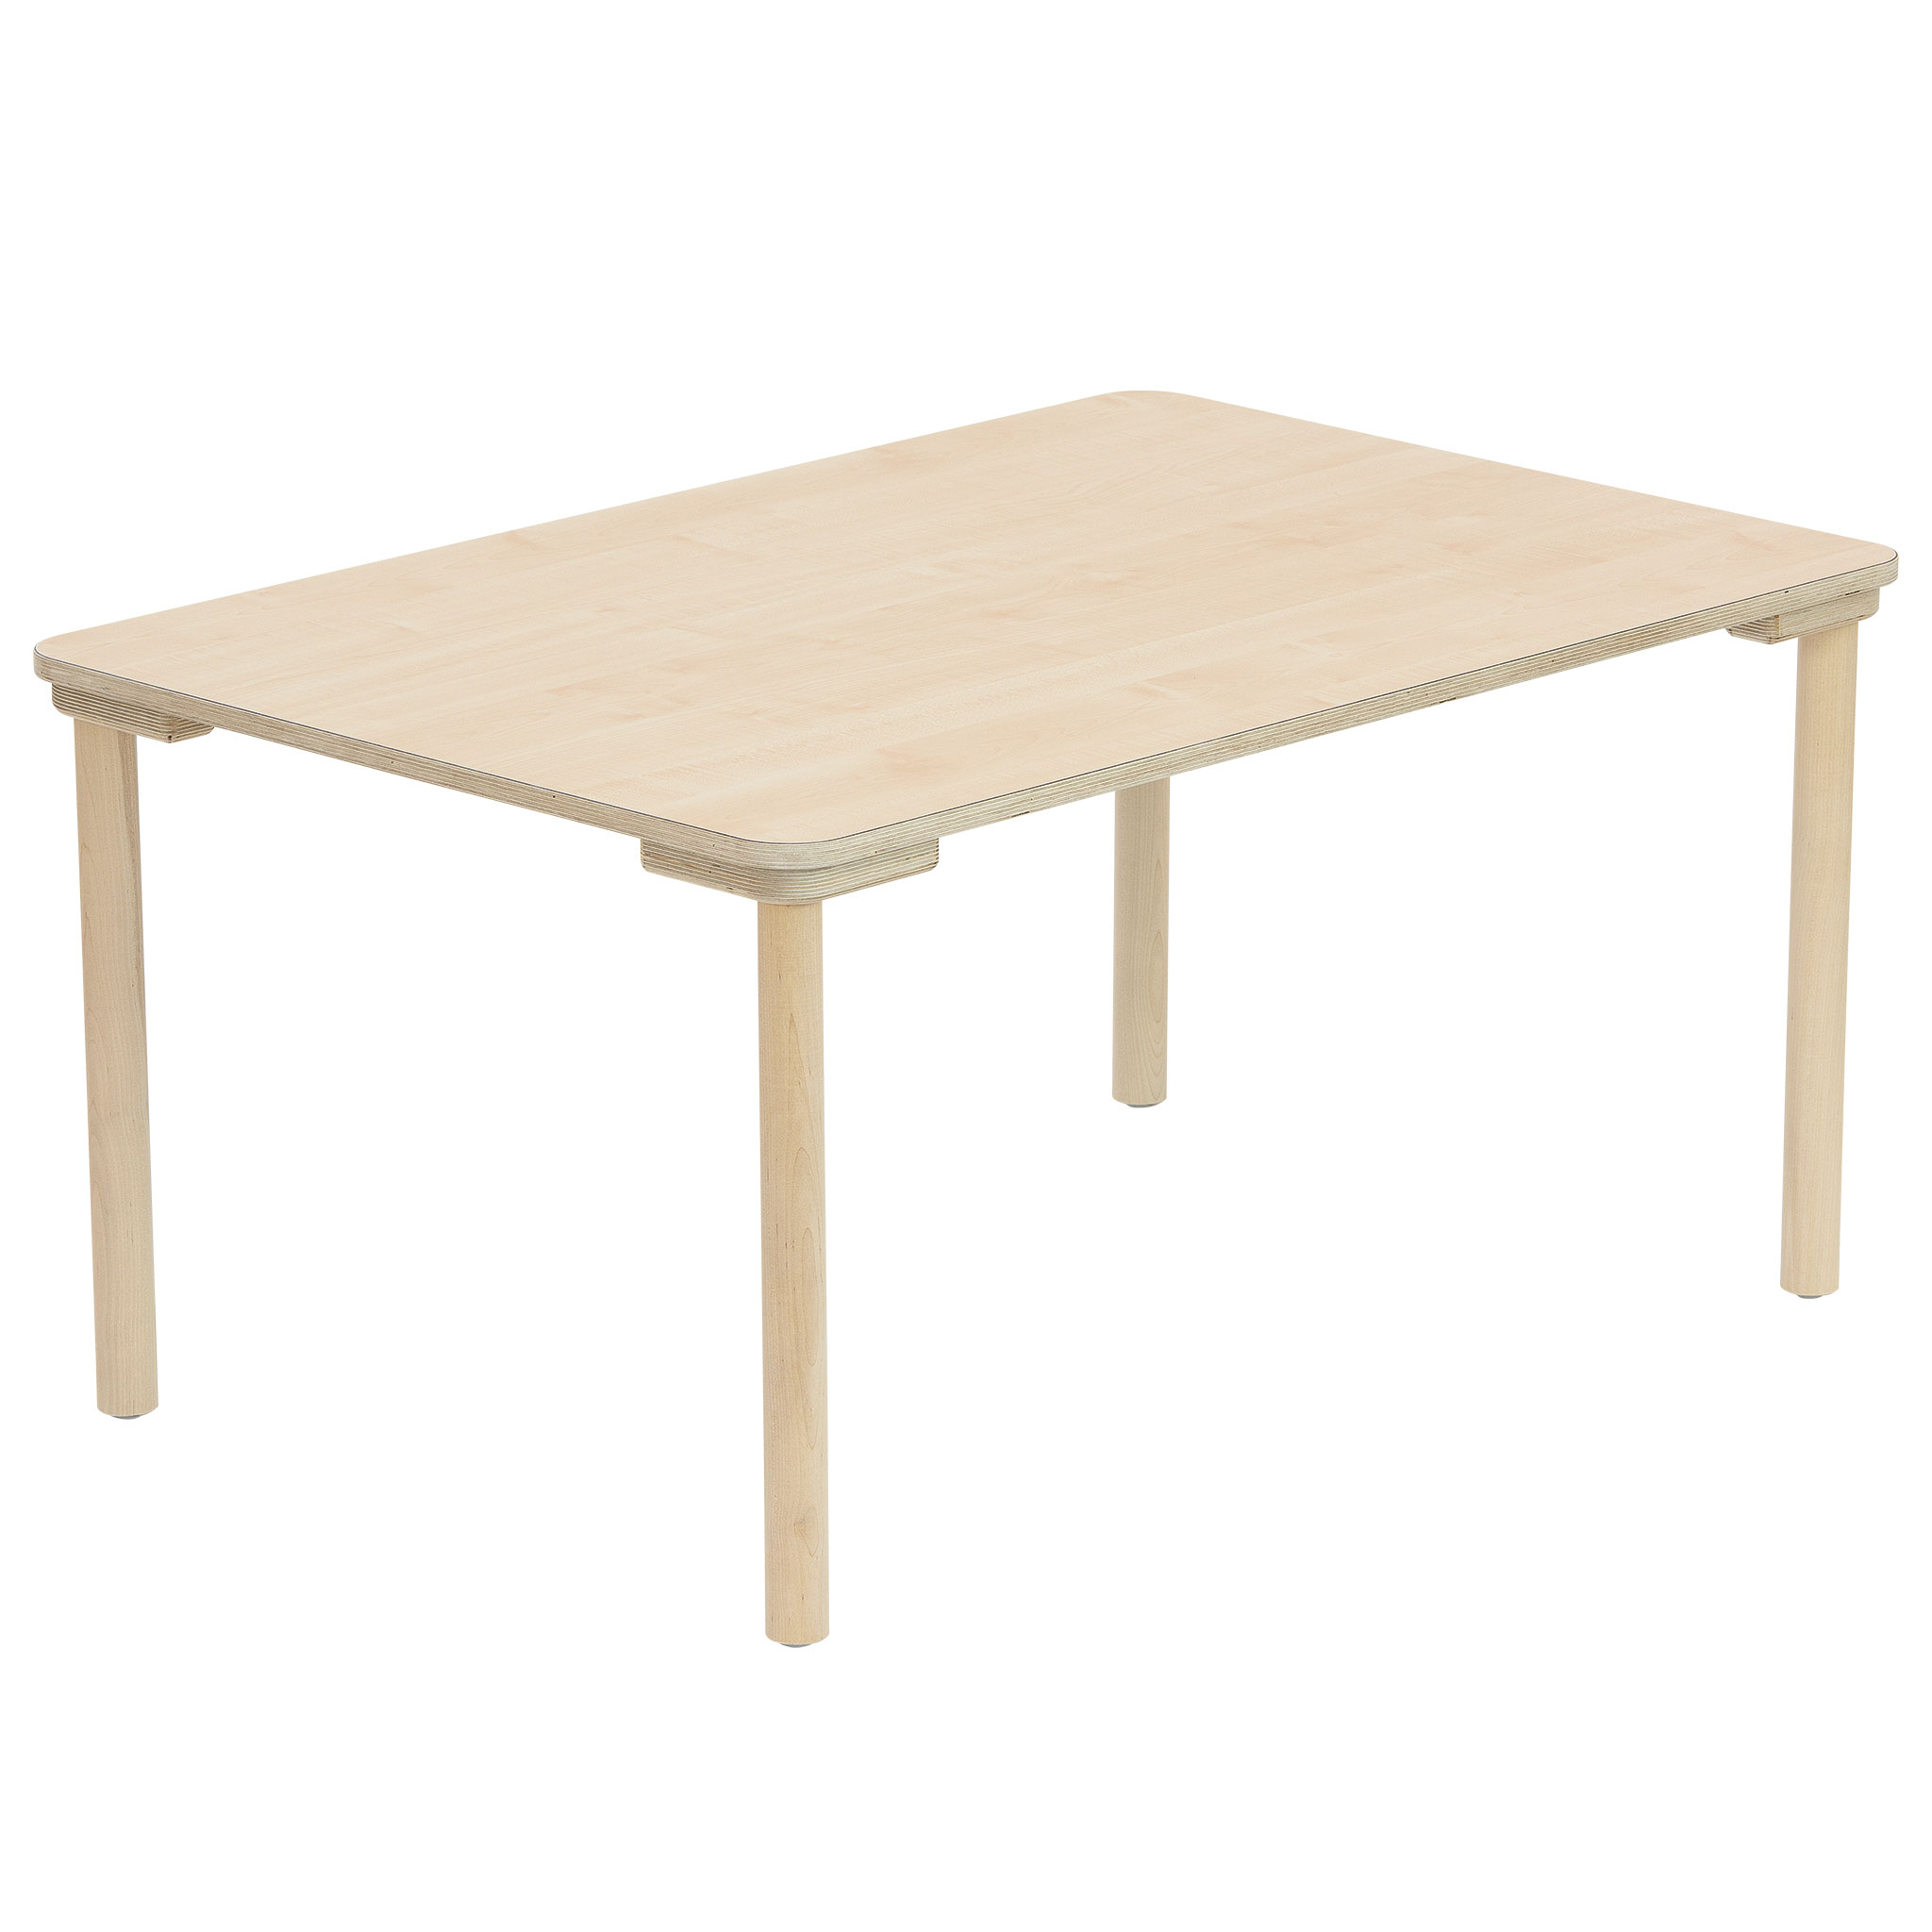 Rechteck-Tisch, 120 x 80 cm, Höhe 46 cm 